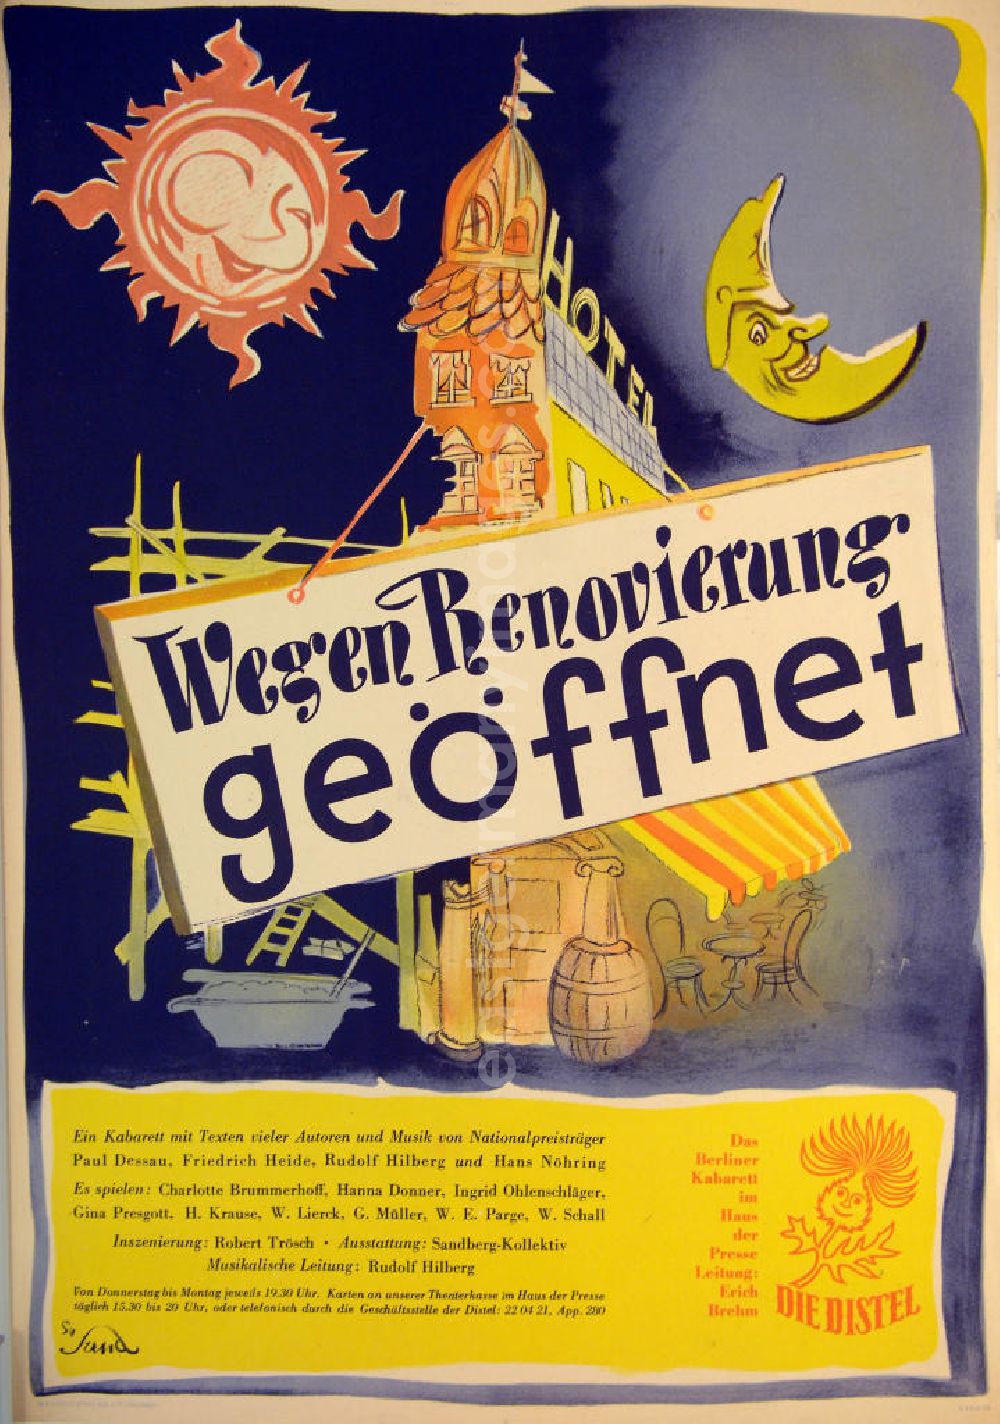 GDR picture archive: Berlin - Plakat von Herbert Sandberg Wegen Renovierung geöffnet für 'Die Distel' aus dem Jahr 1954, 41,